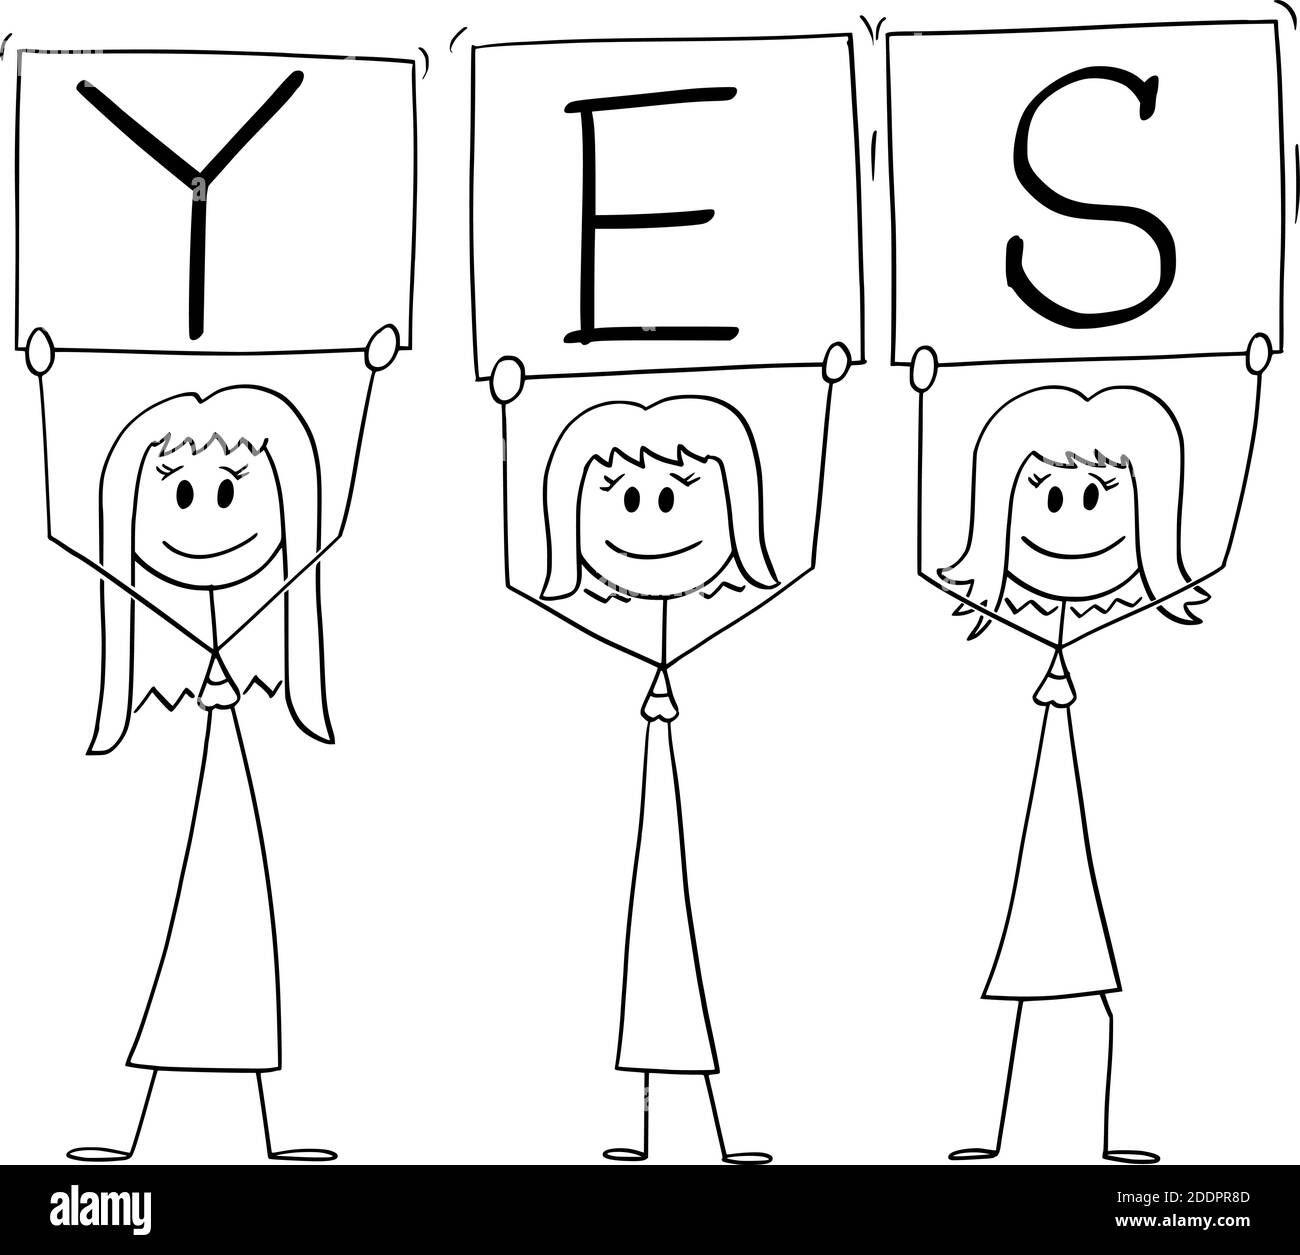 Vektor Cartoon Stick Figur Illustration von drei lächelnden positiven Frauen auf Demonstration hält ja Zeichen. Stock Vektor